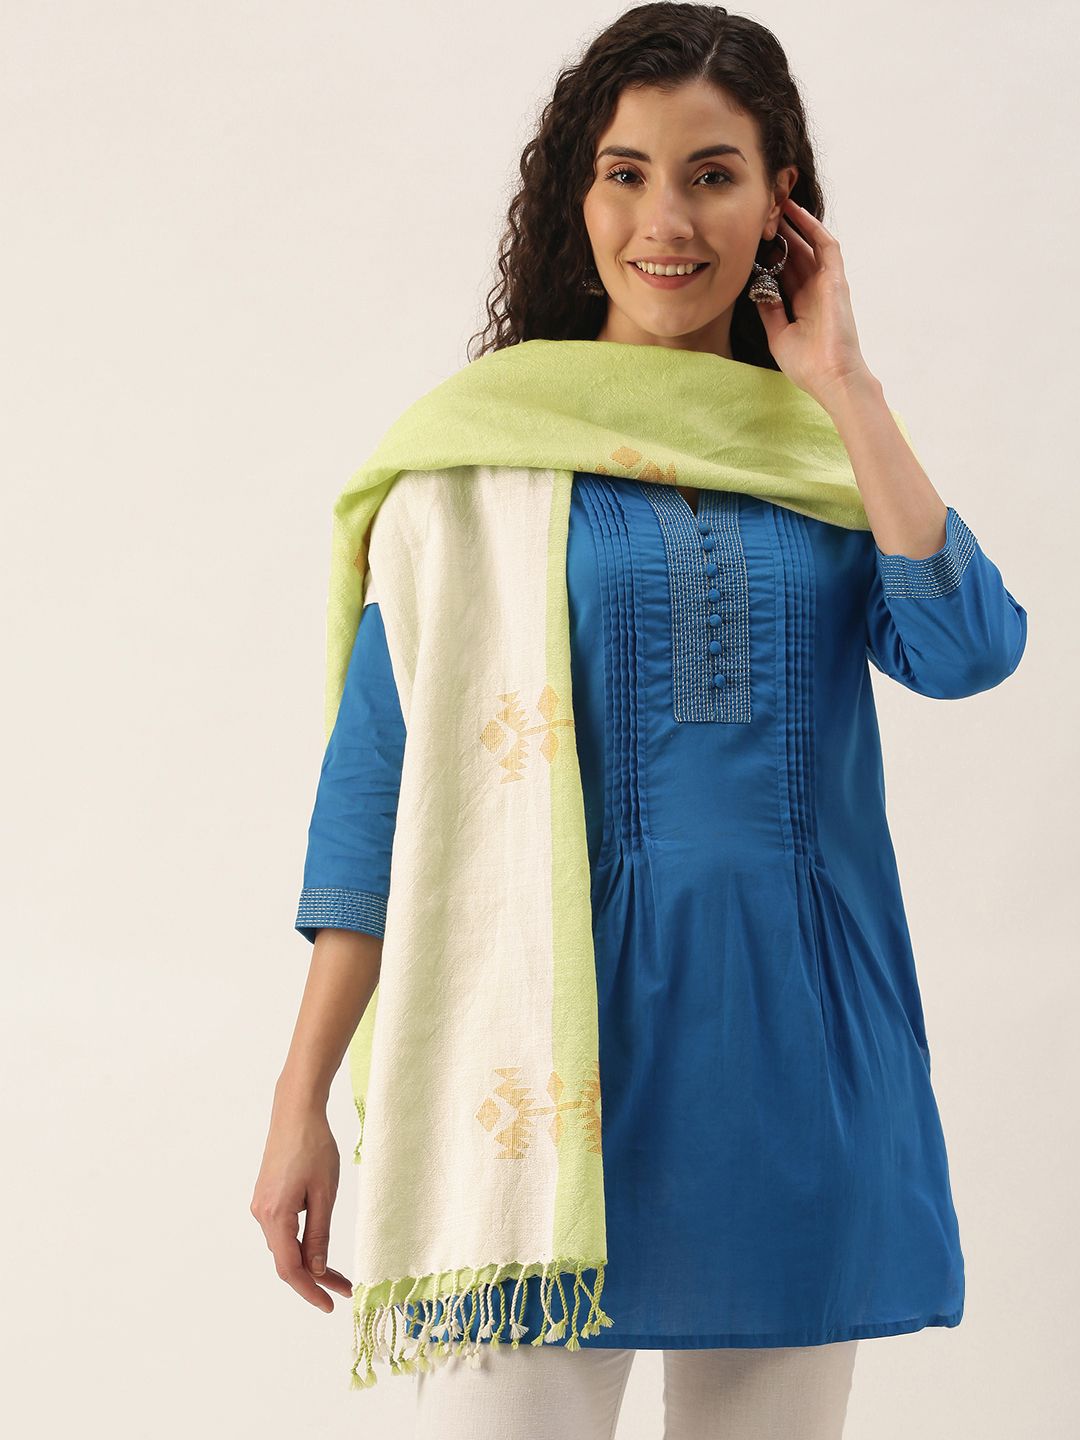 Women's Off White & Green Handloom Merino Wool Jamdani Stole Price in India